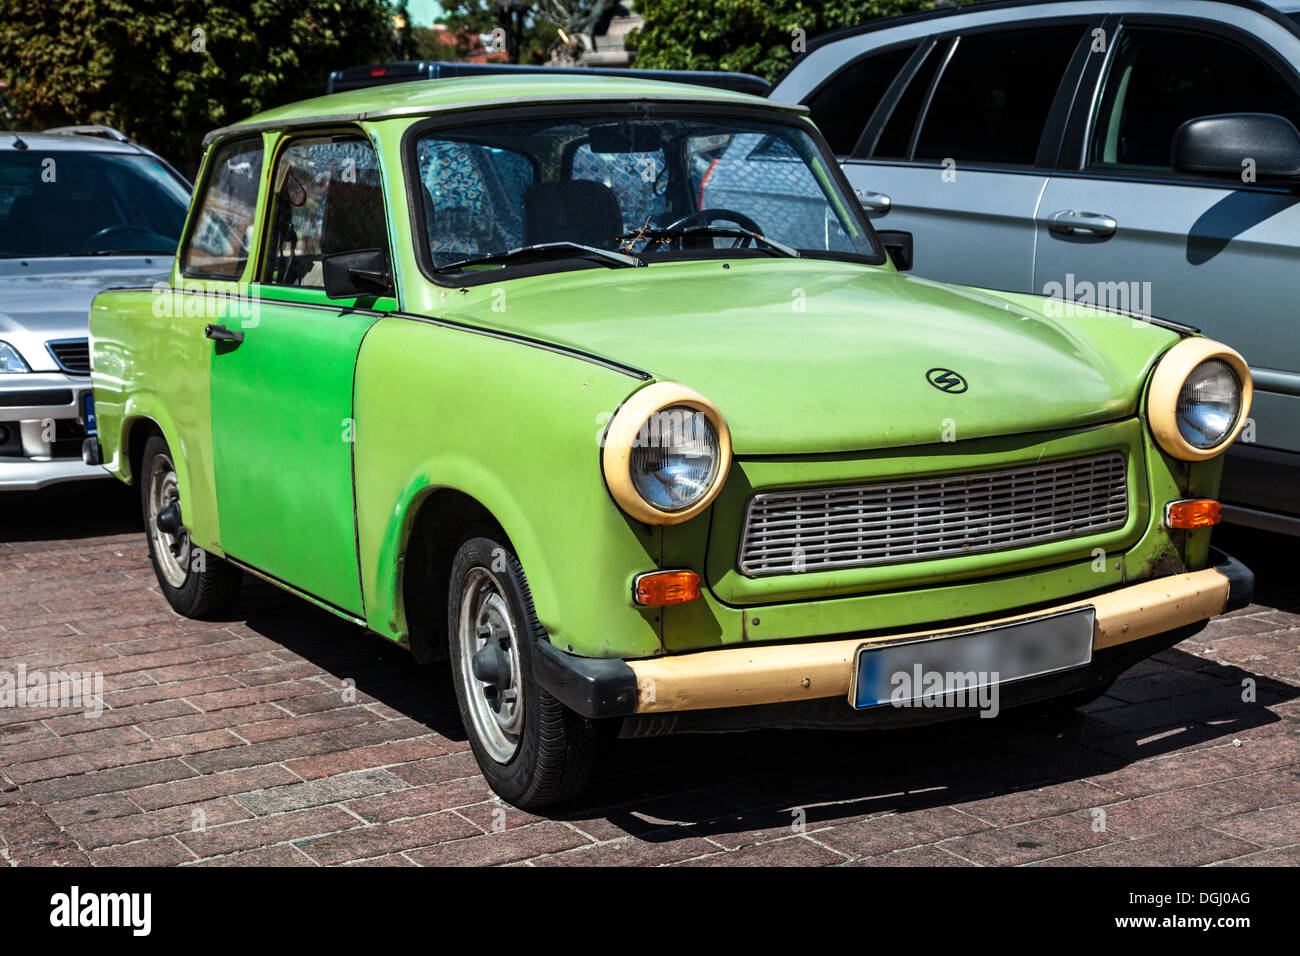 Une vieille Trabant verte 601S une voiture fabriquée en Allemagne de l'est à l'époque socialiste et maintenant un classique. Banque D'Images